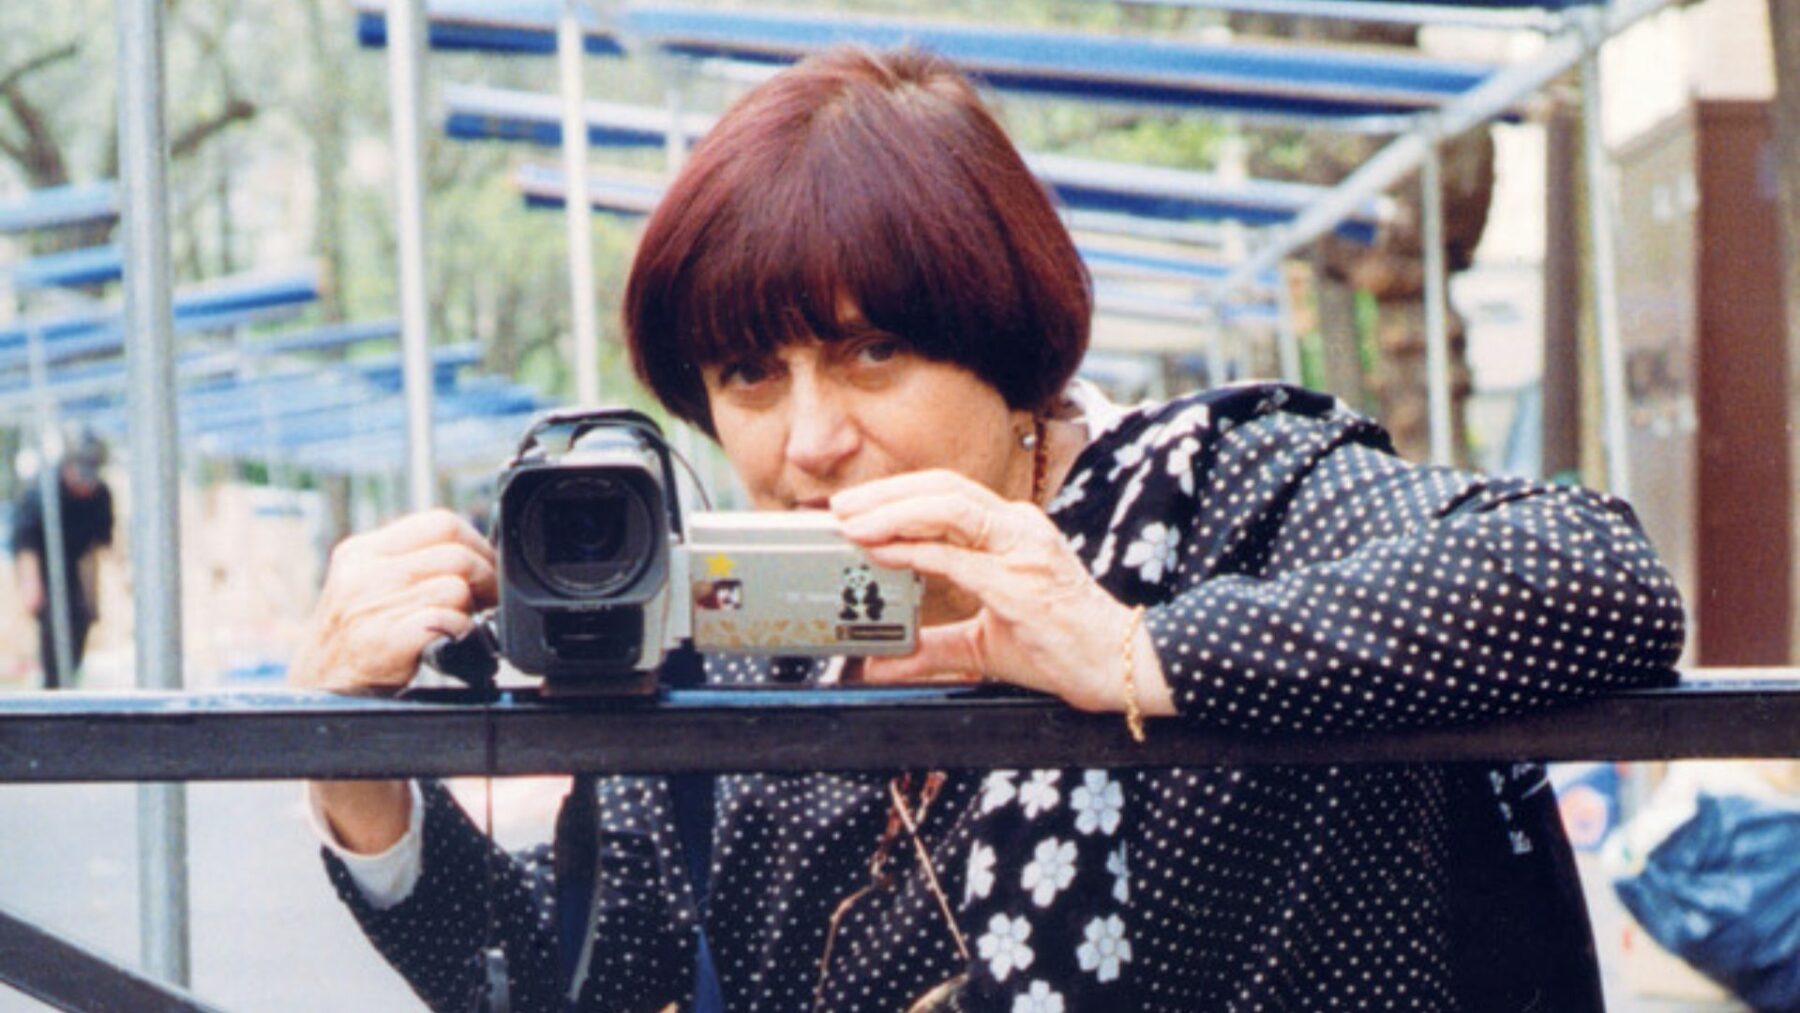 Kadr z bohaterką kręcącą film na kamerze